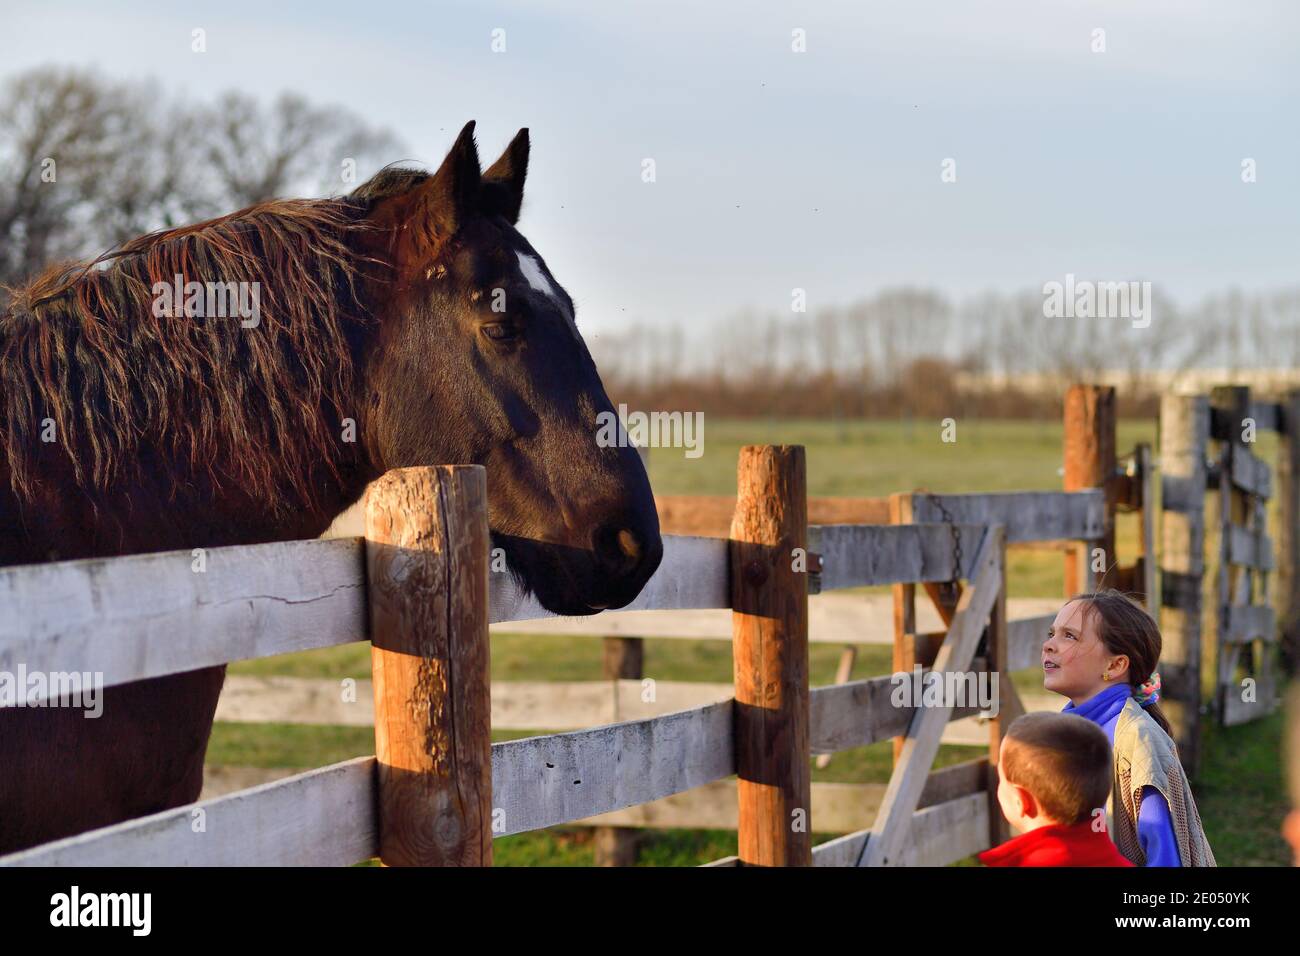 West Chicago, Illinois, EE.UU. Un gran caballo relacionado con un niño y una niña en un entorno rural en una granja en funcionamiento. Foto de stock